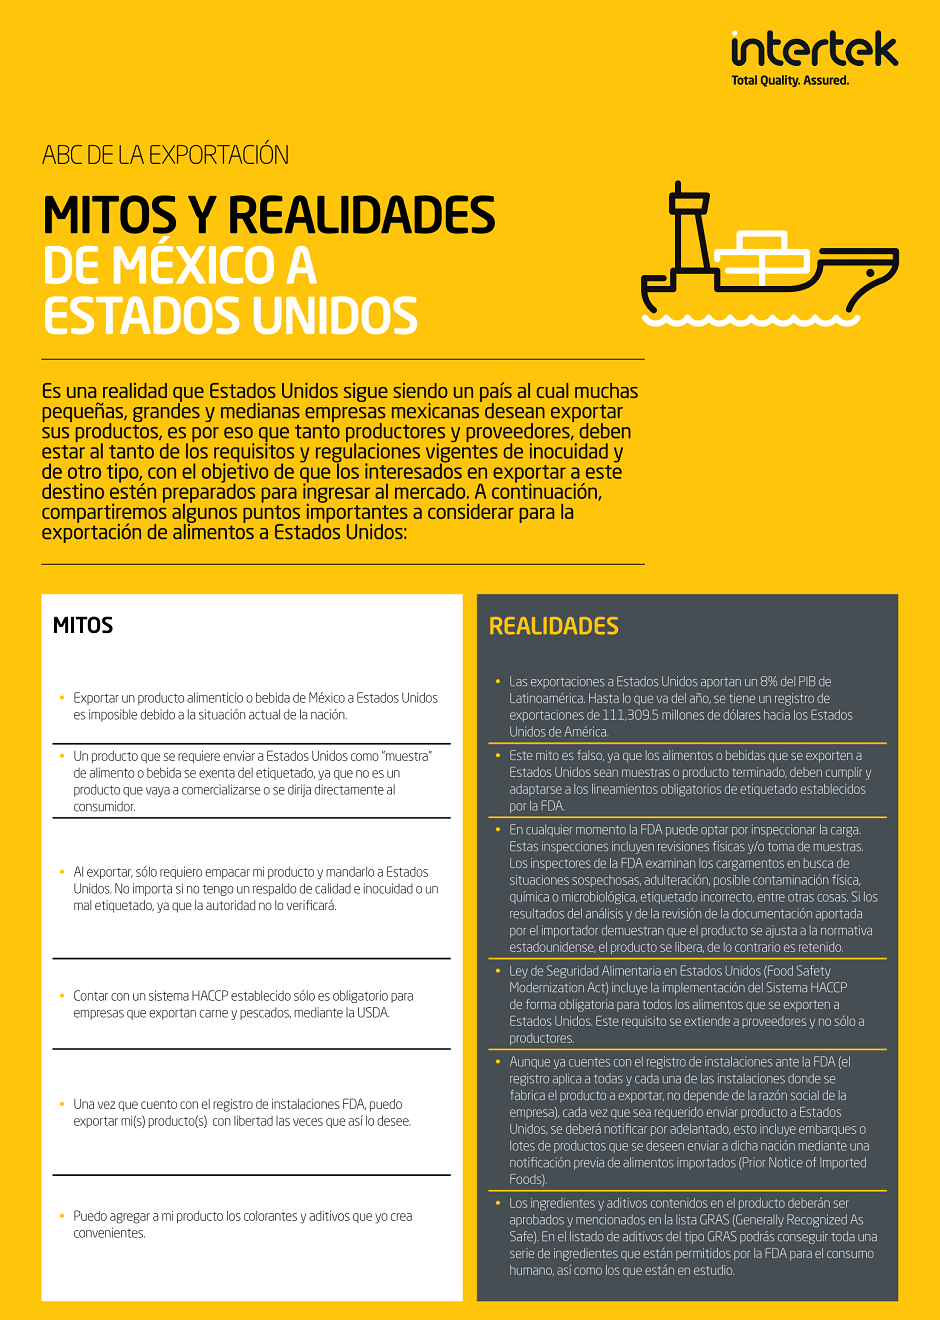 NL_FS_Mitos_Realidades_ESP_06102018-1